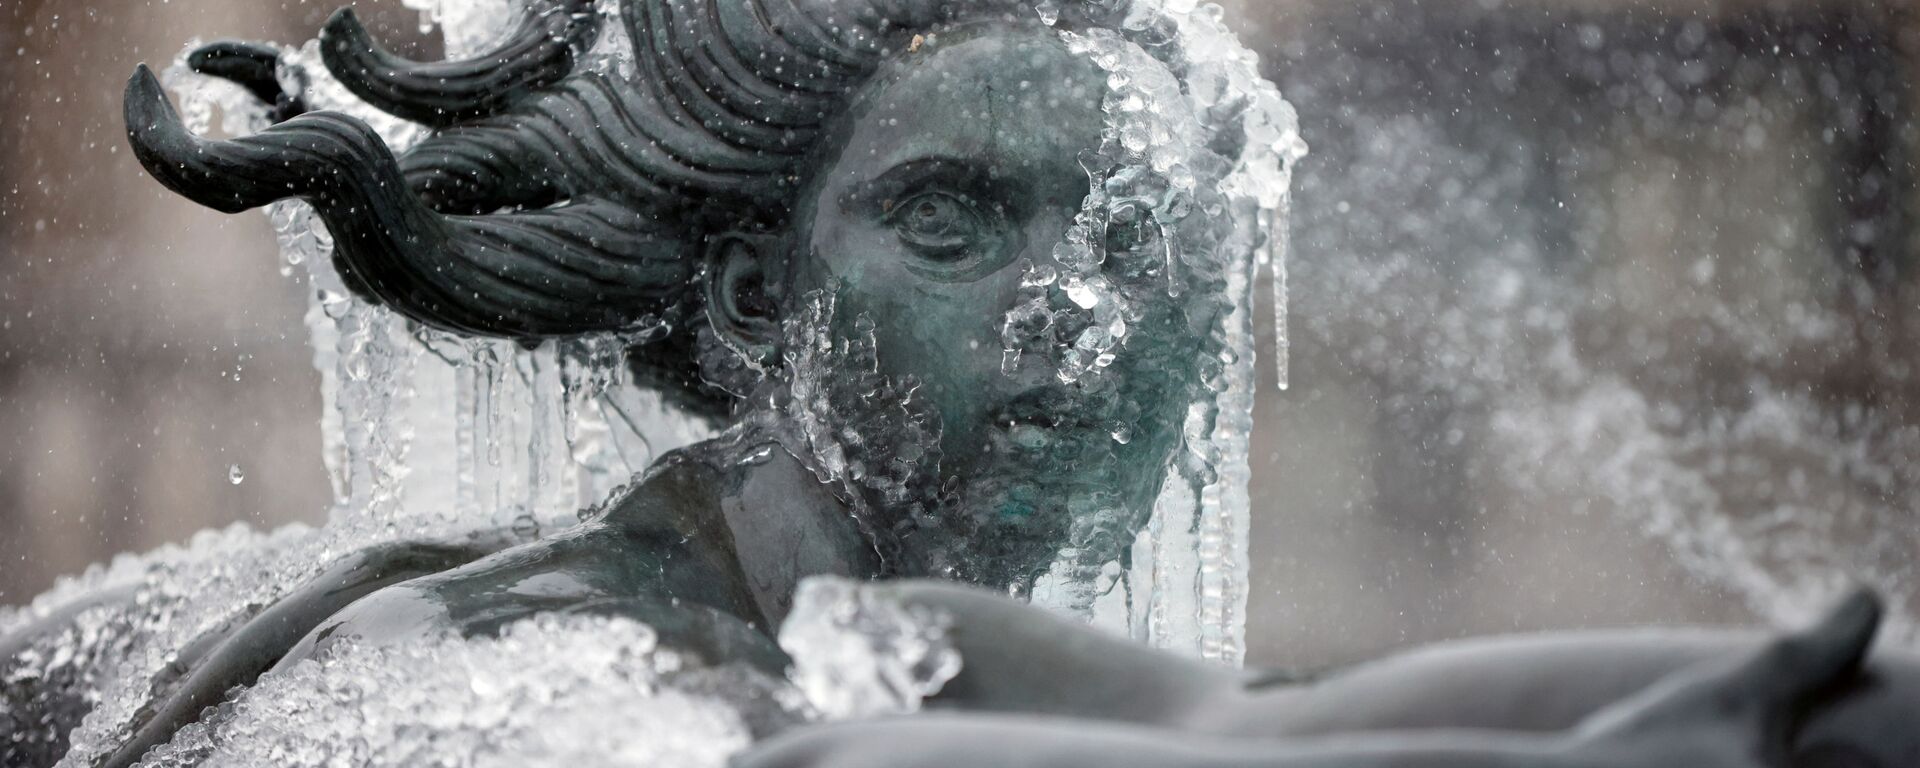 Покрытая льдом статуя на Трафальгарской площади в Лондоне  - Sputnik Молдова, 1920, 11.02.2021